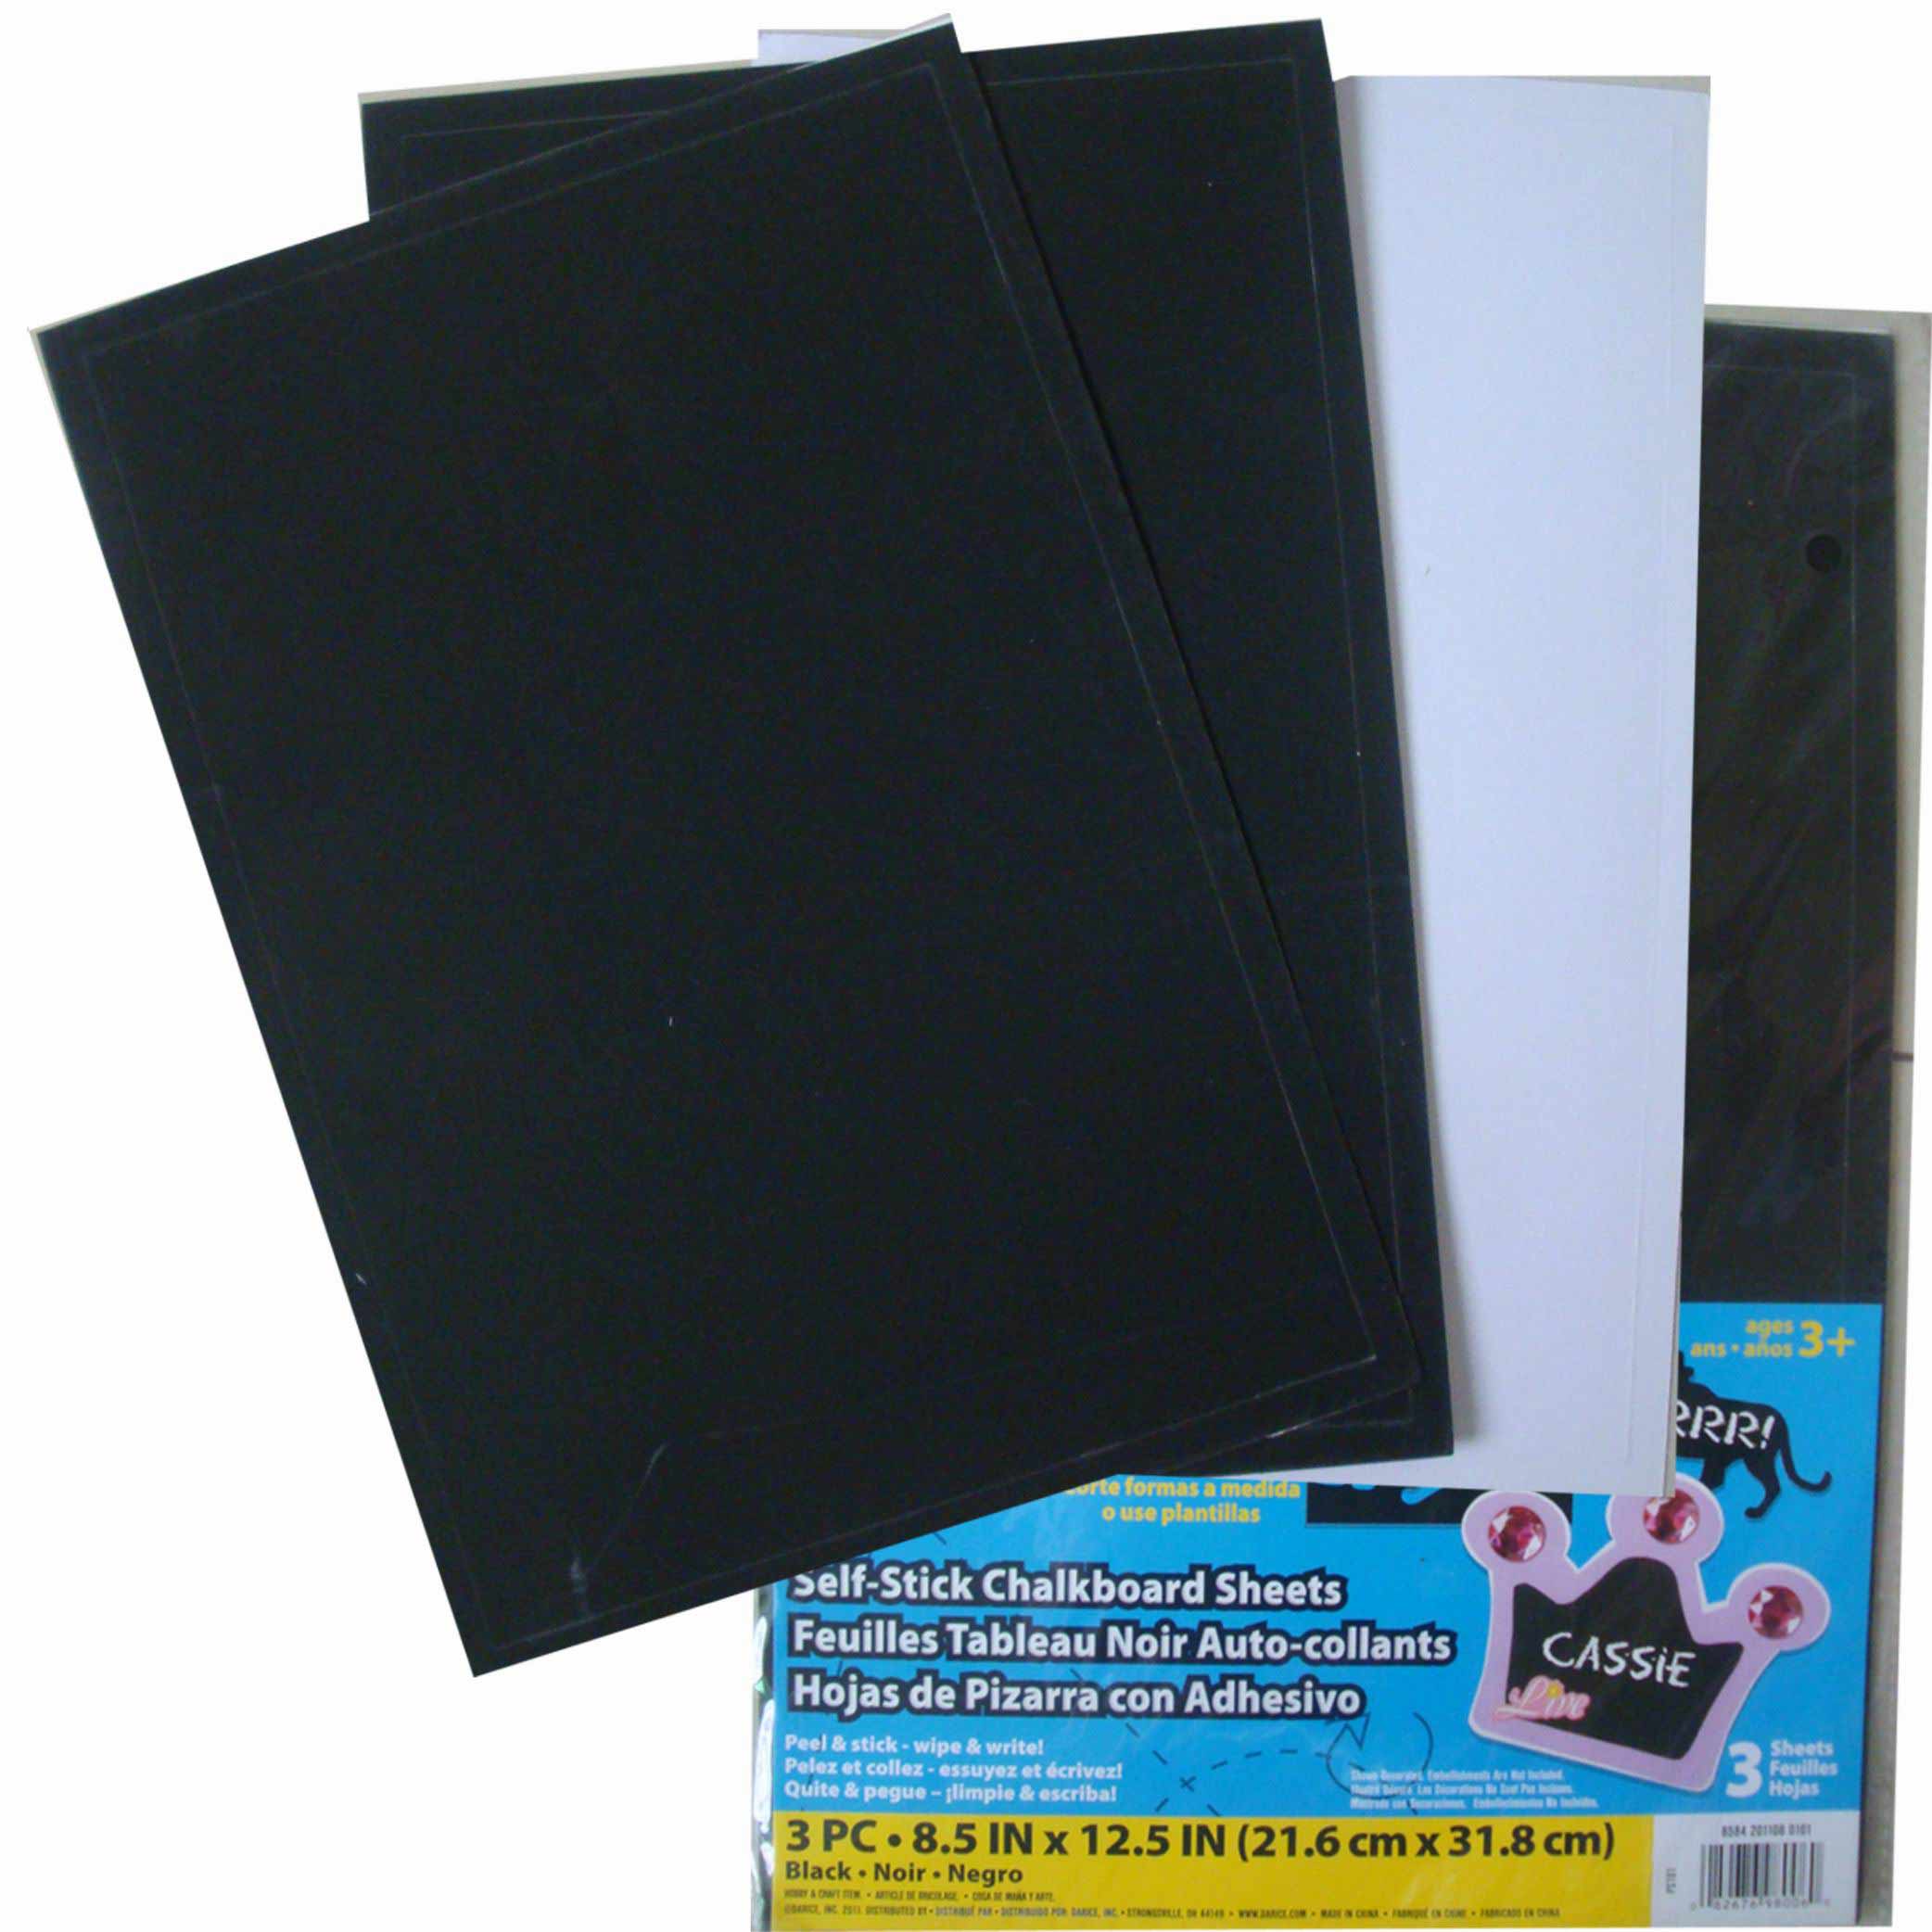 Paper cardboard self-stick chalkboard sheets,adesivo blackboard